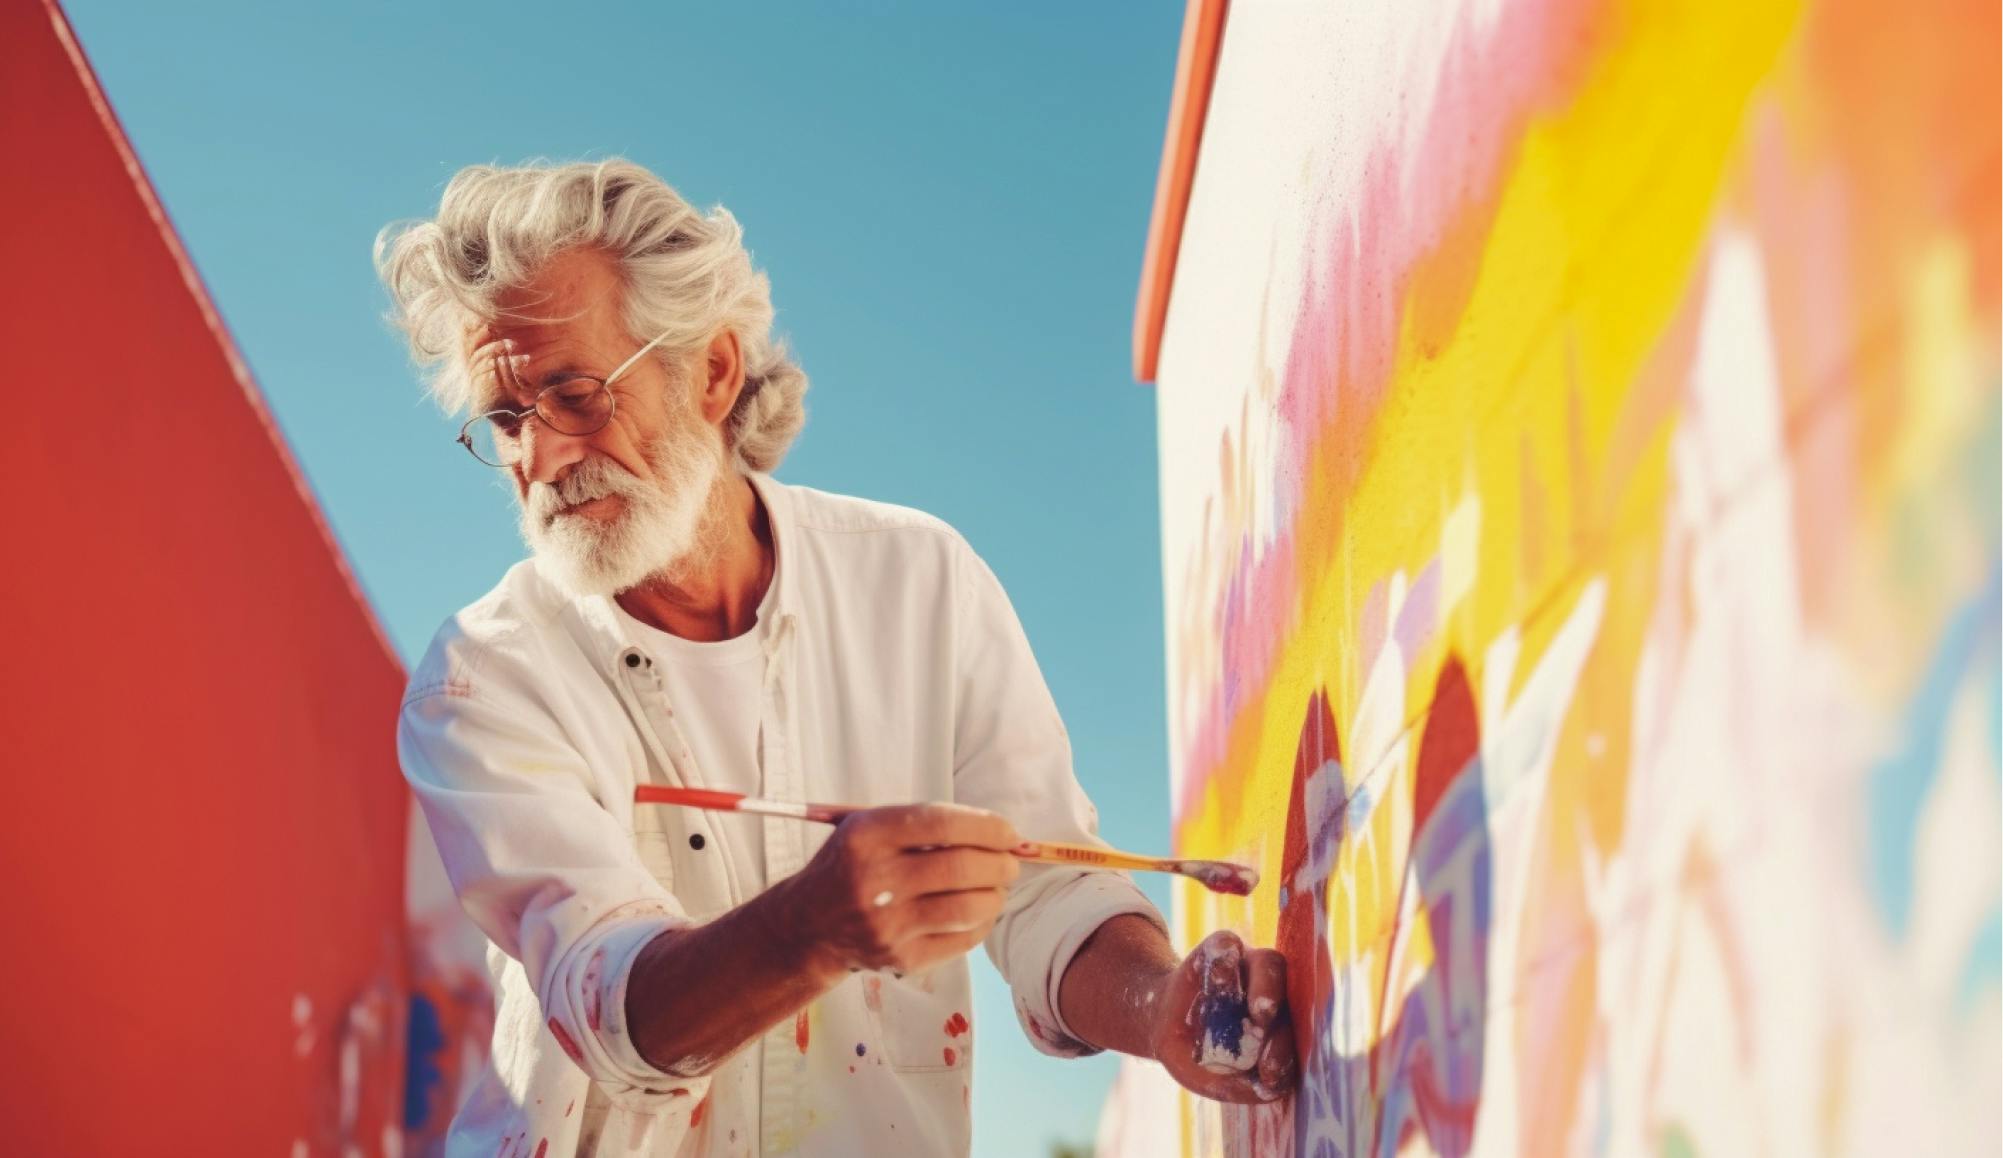 Un homme peint un mur avec des couleurs vives